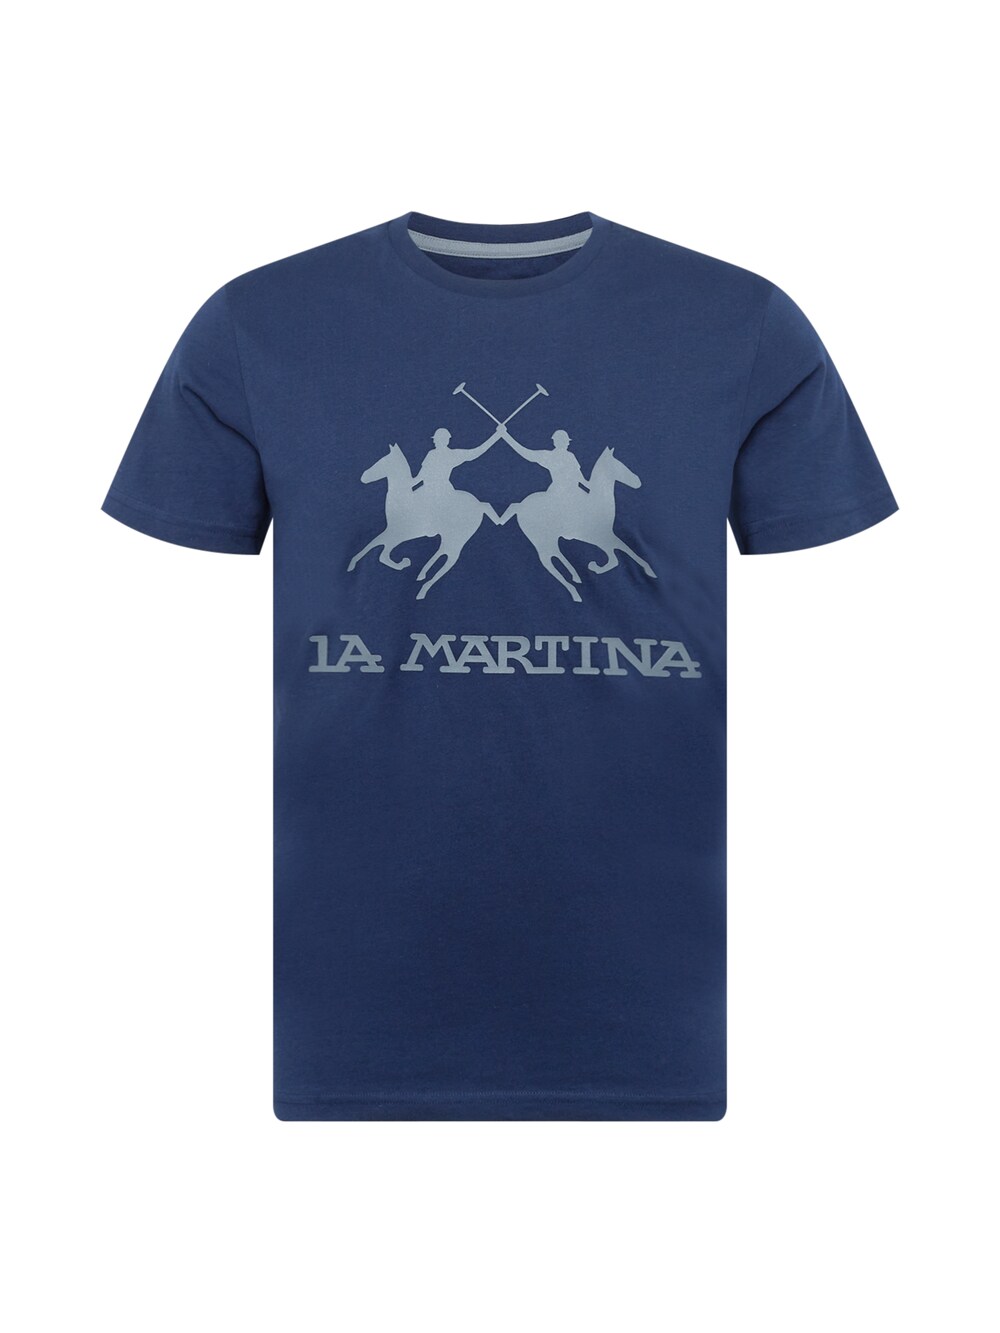 Футболка La Martina, темно-синий/дымчато-синий